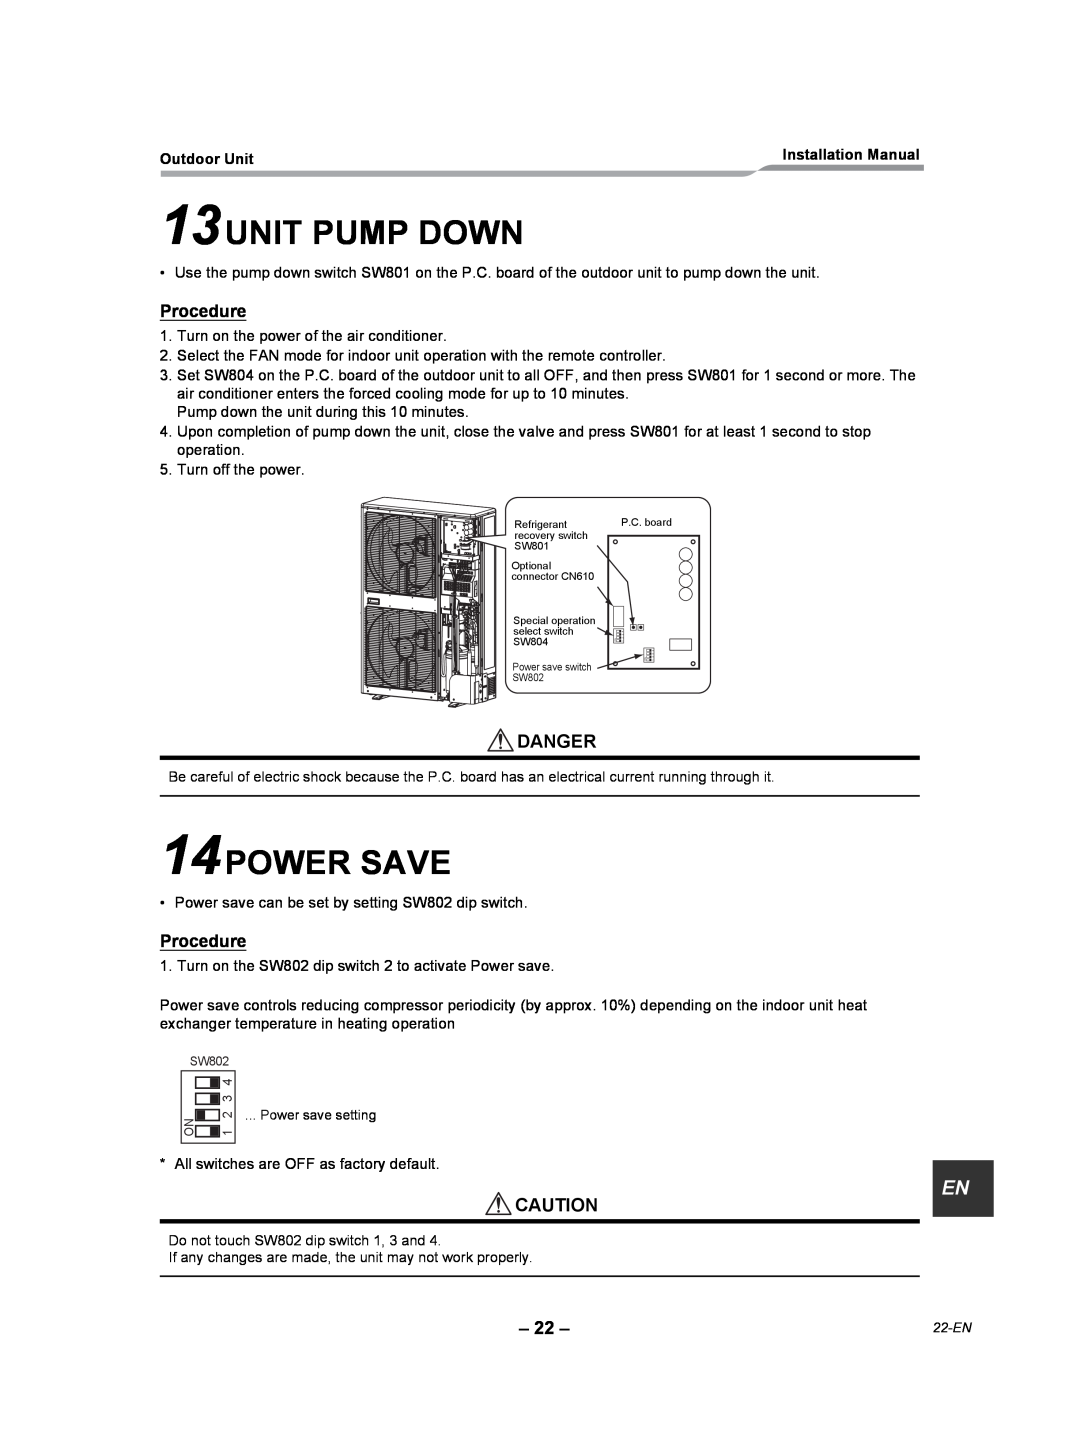 Toshiba RAV-SP420AT2-UL, RAV-SP360AT2-UL, RAV-SP300AT2-UL installation manual 13UNIT PUMP DOWN, 14POWER SAVE, Procedure 